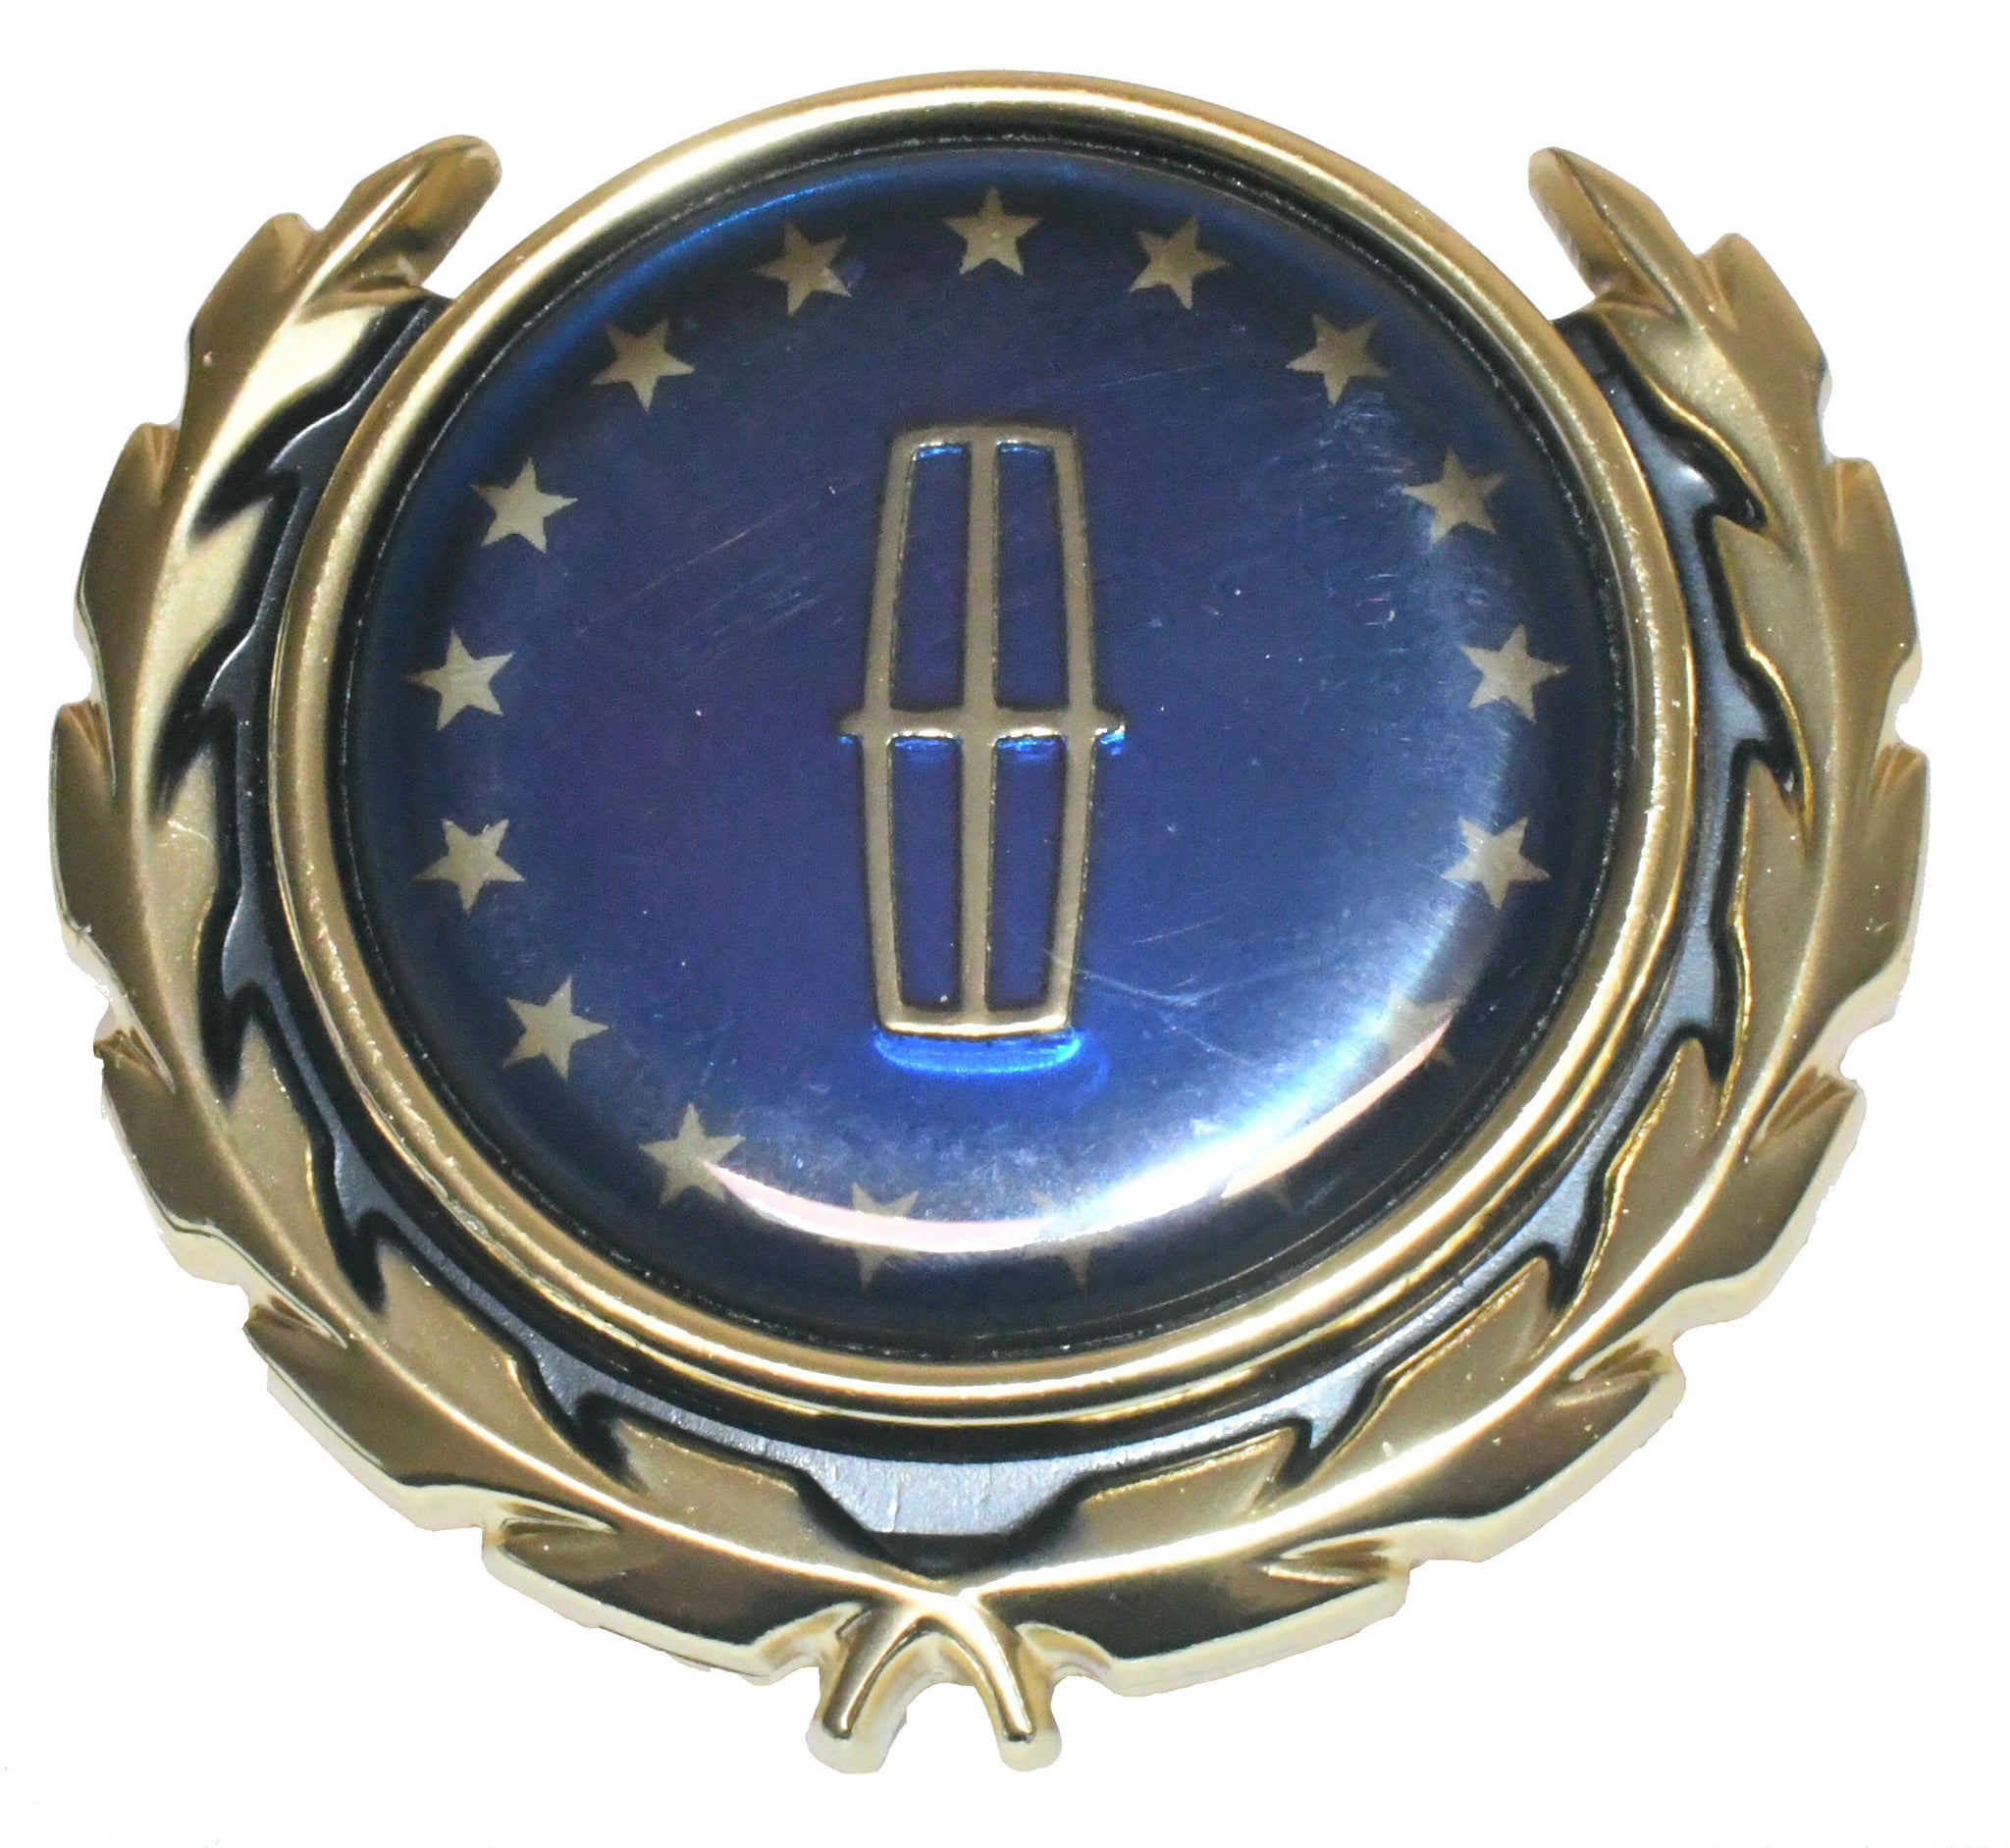 New C pillar ornament emblem for 1982-1987 Lincoln Continental E25Y-54517A20-C